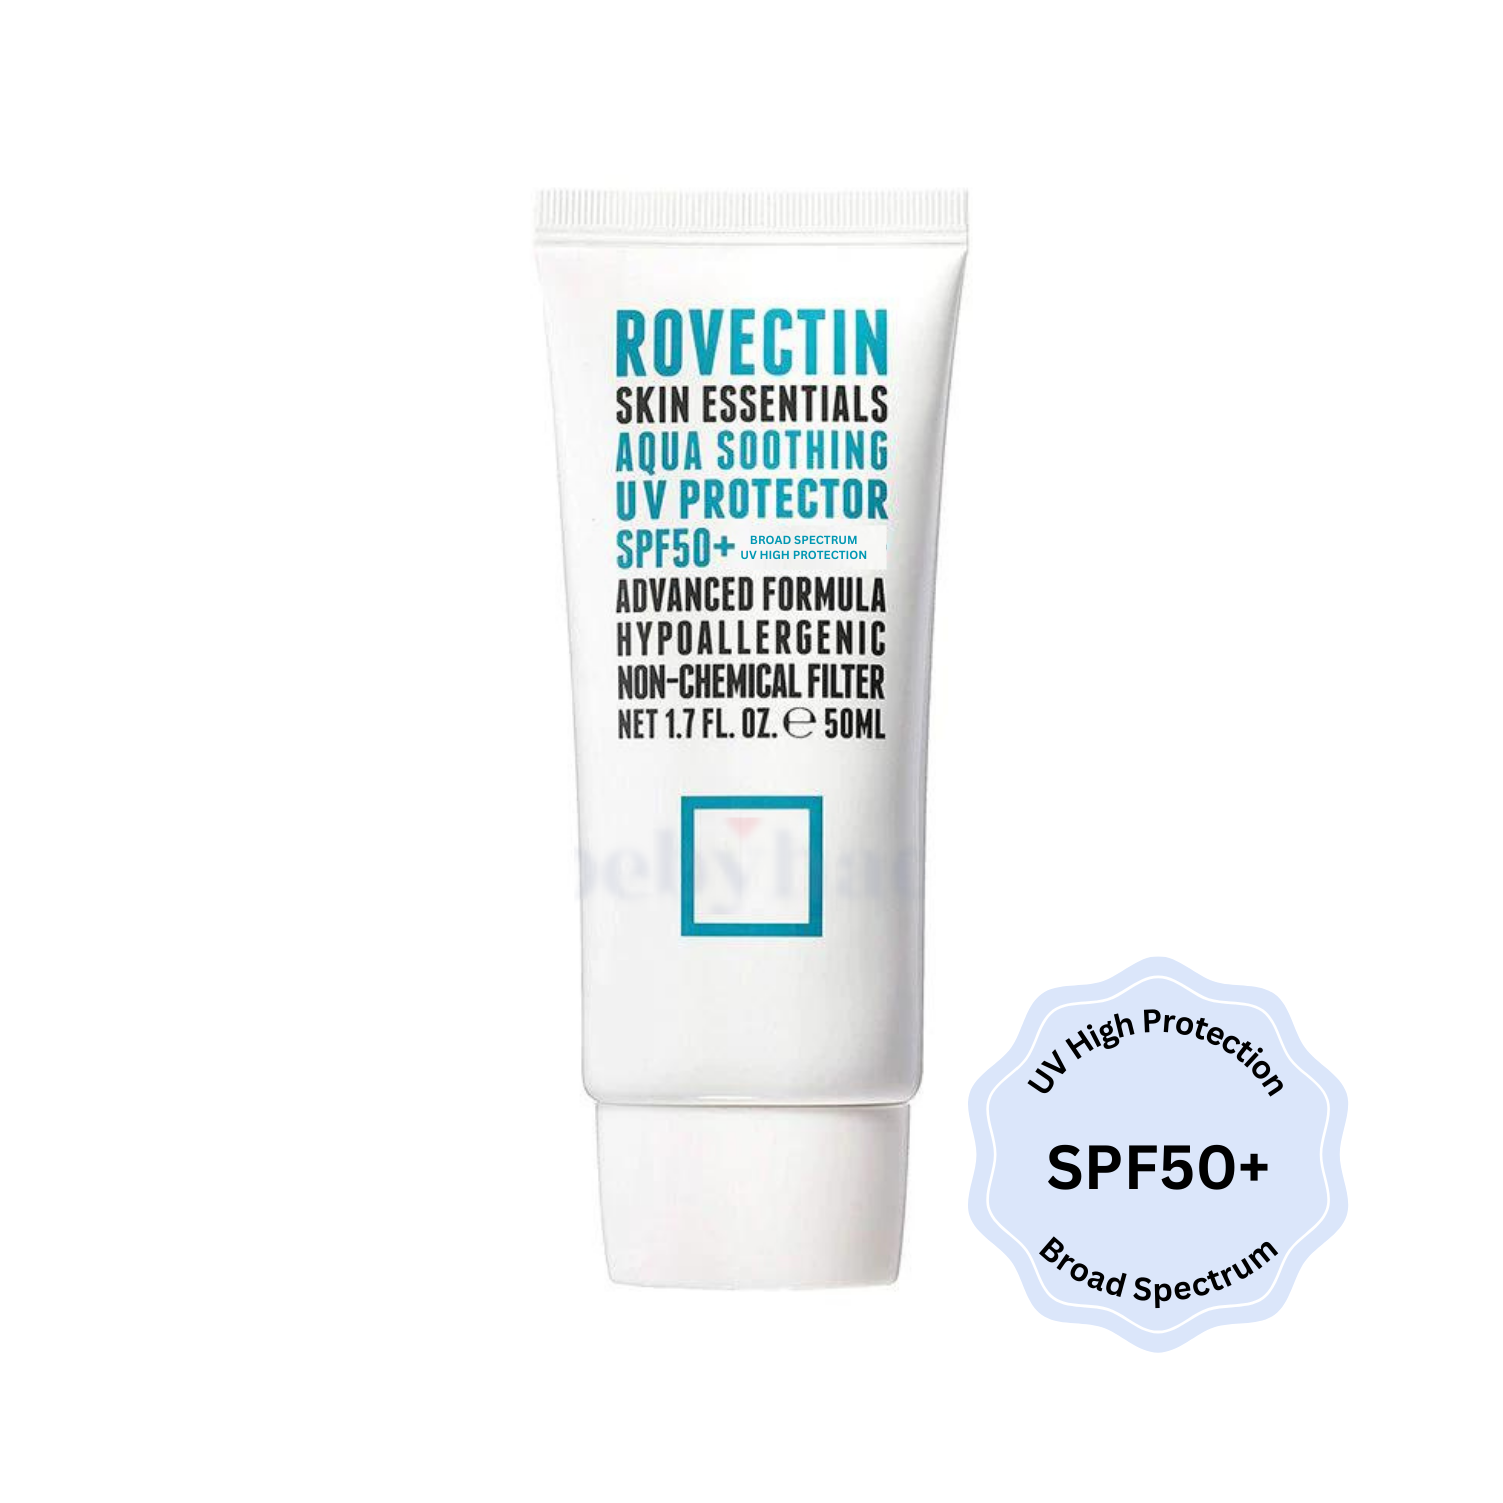 Skin Essentials Aqua Soothing UV Protector SPF50+ Broad Spectrum